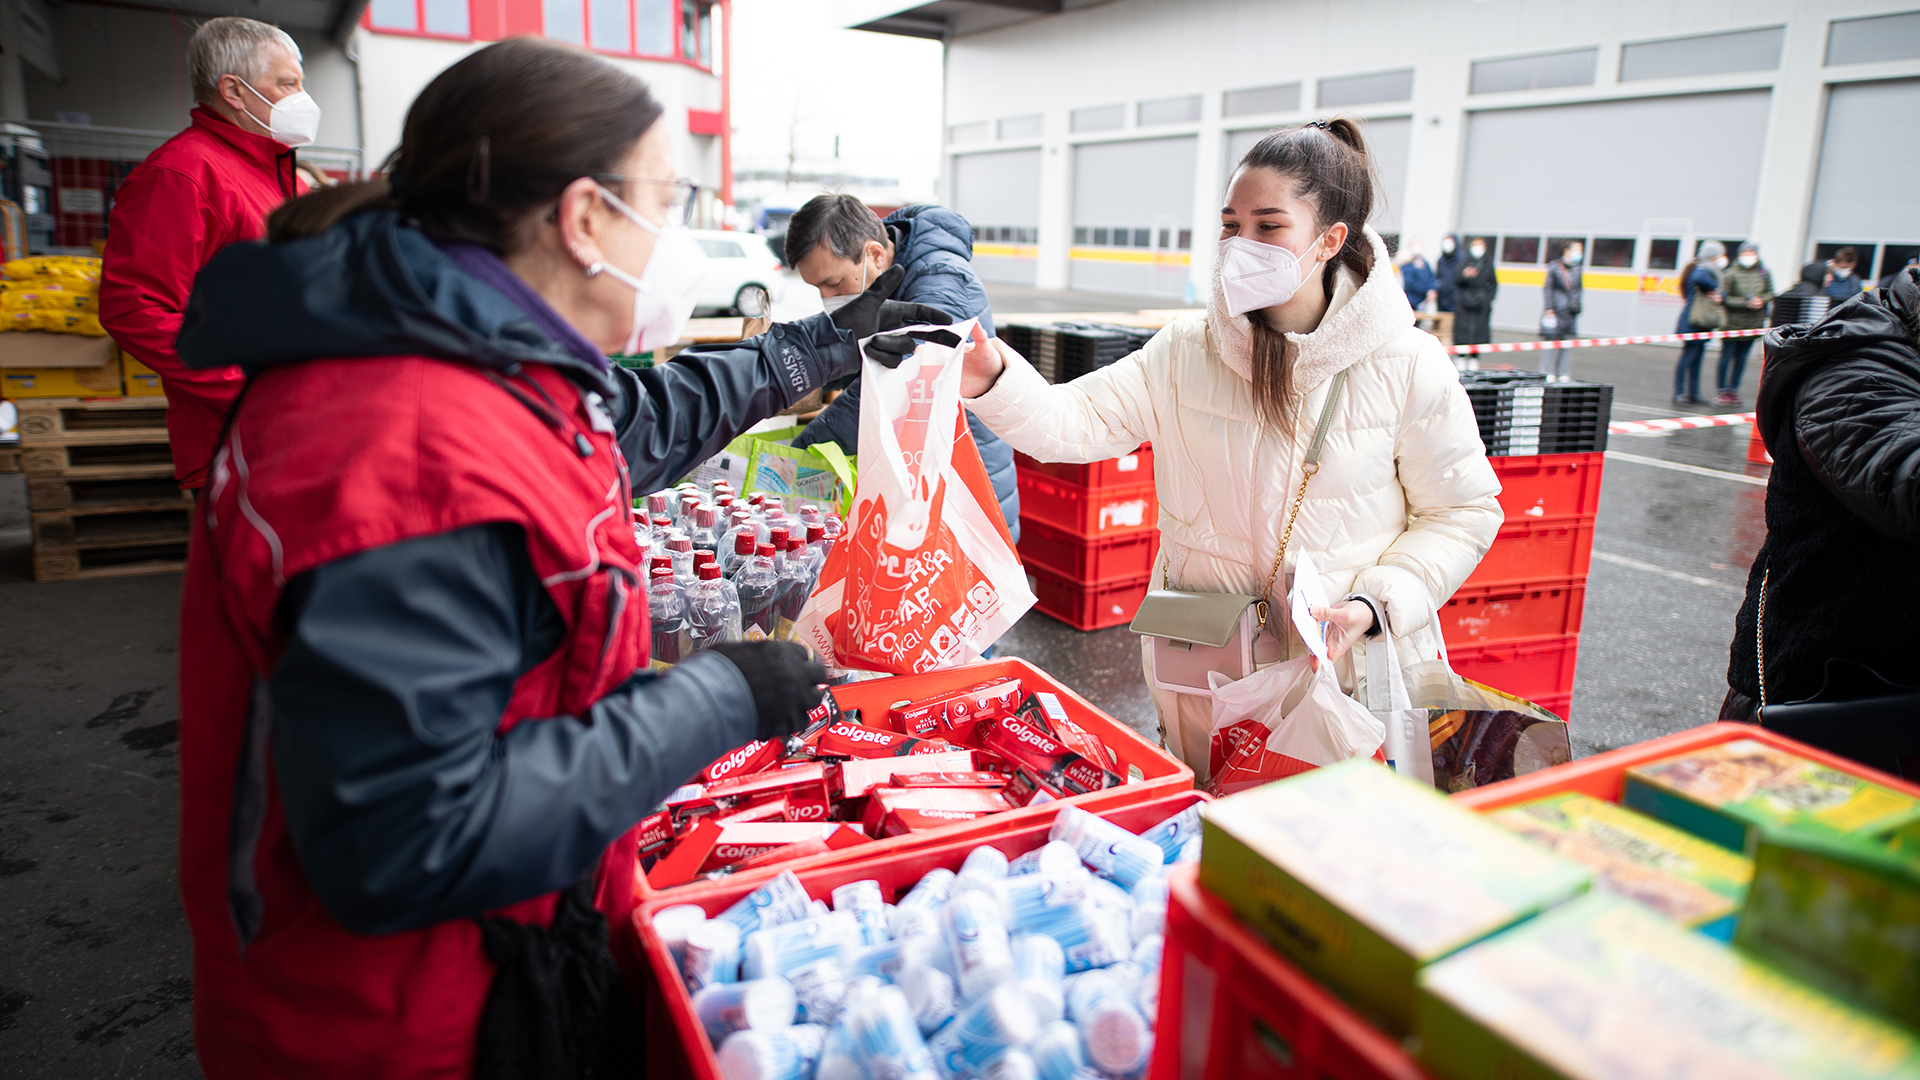 Helfer der Hamburger Tafel versorgen Flüchtlinge aus der Ukraine mit Lebensmitteln.